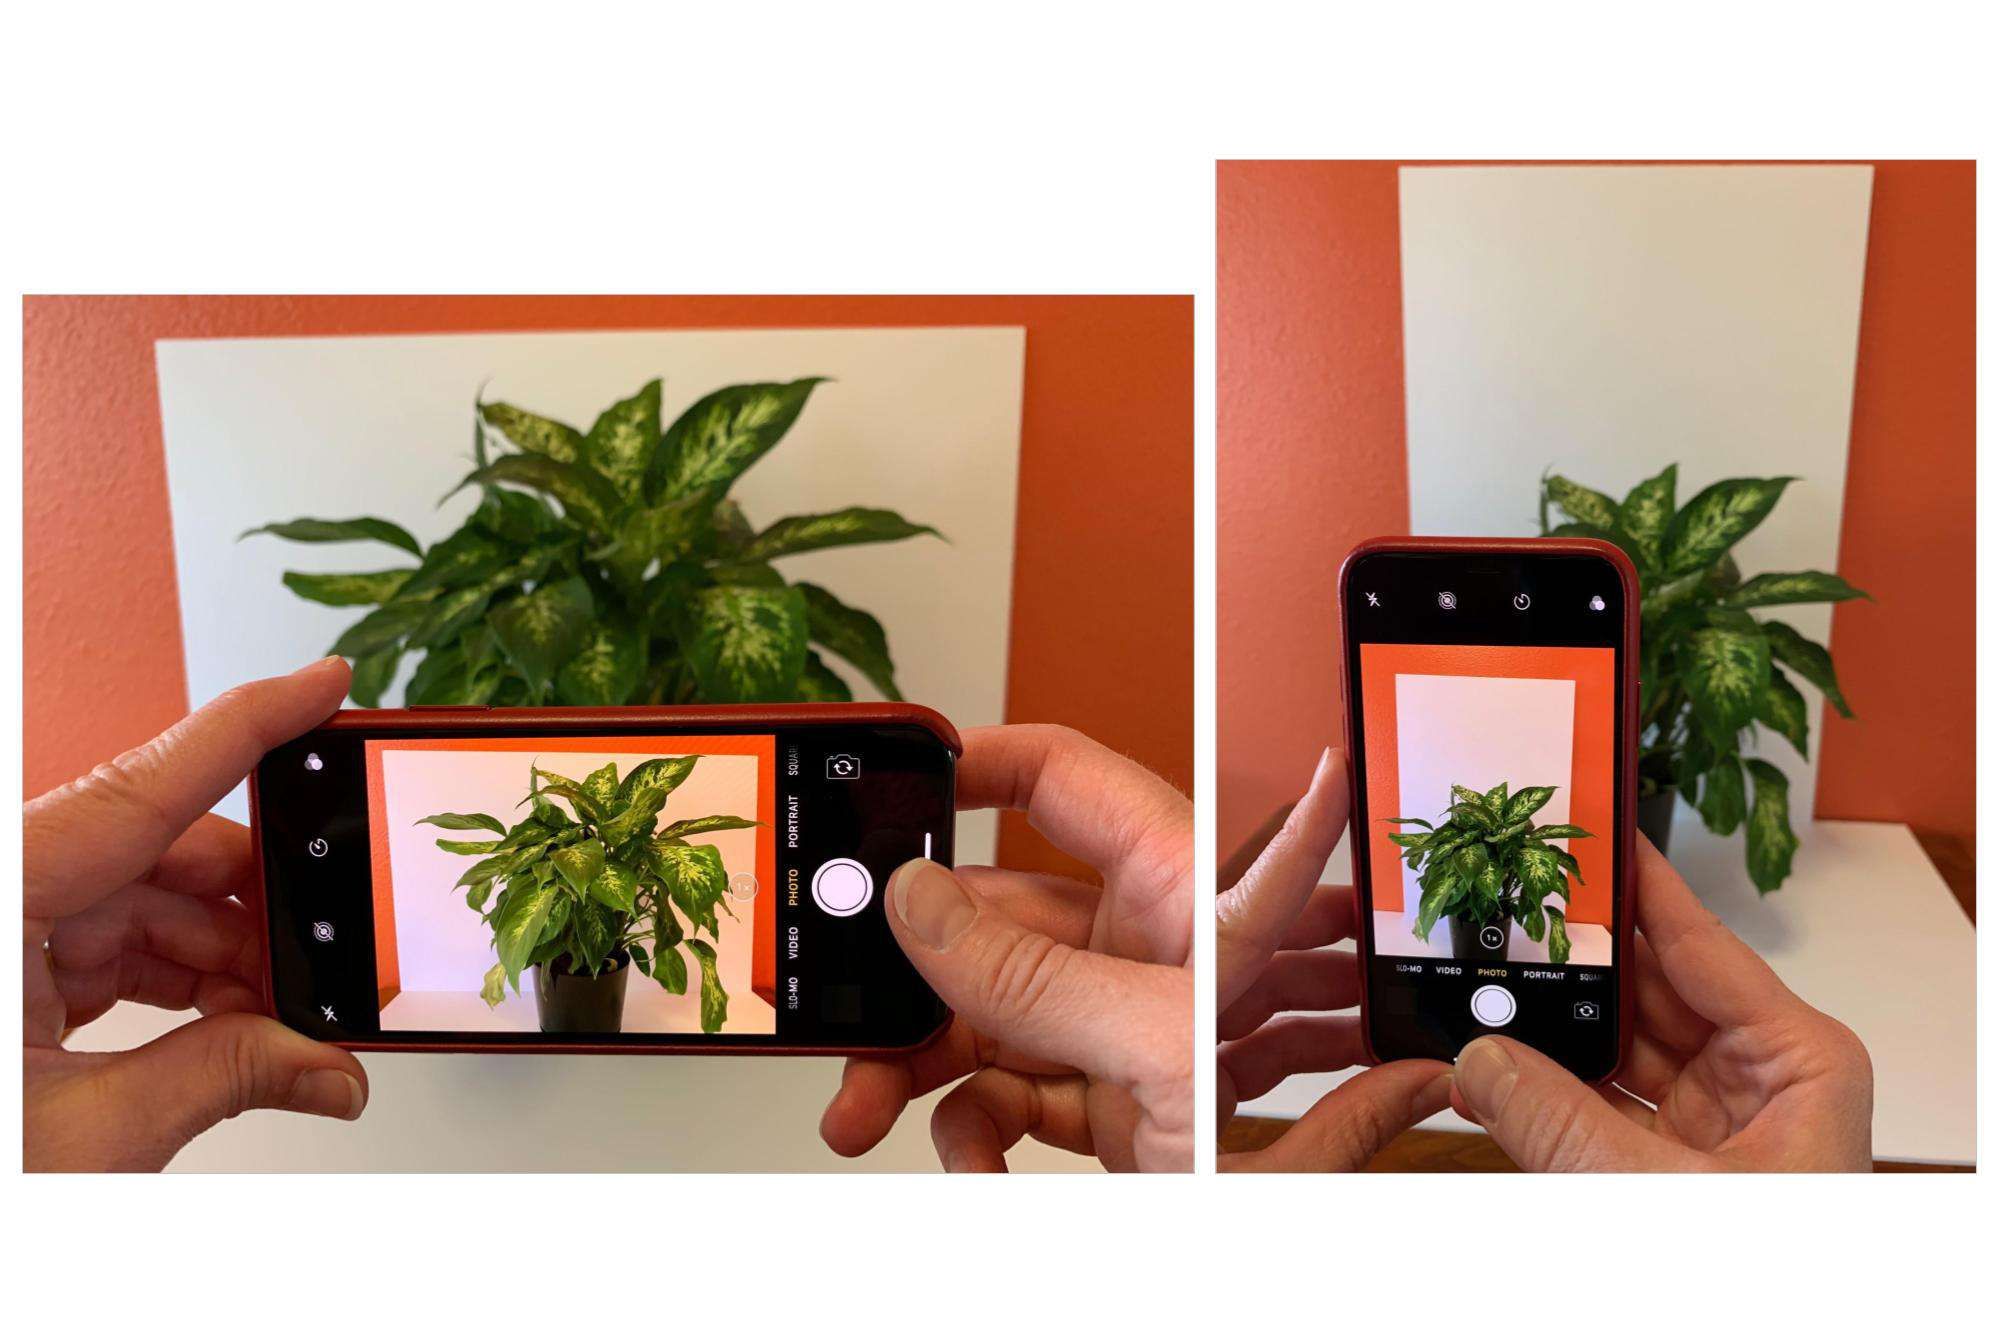 Левое изображение показывает iPhone в горизонтальной ориентации; правое изображение показывает iPhone в портретной ориентации